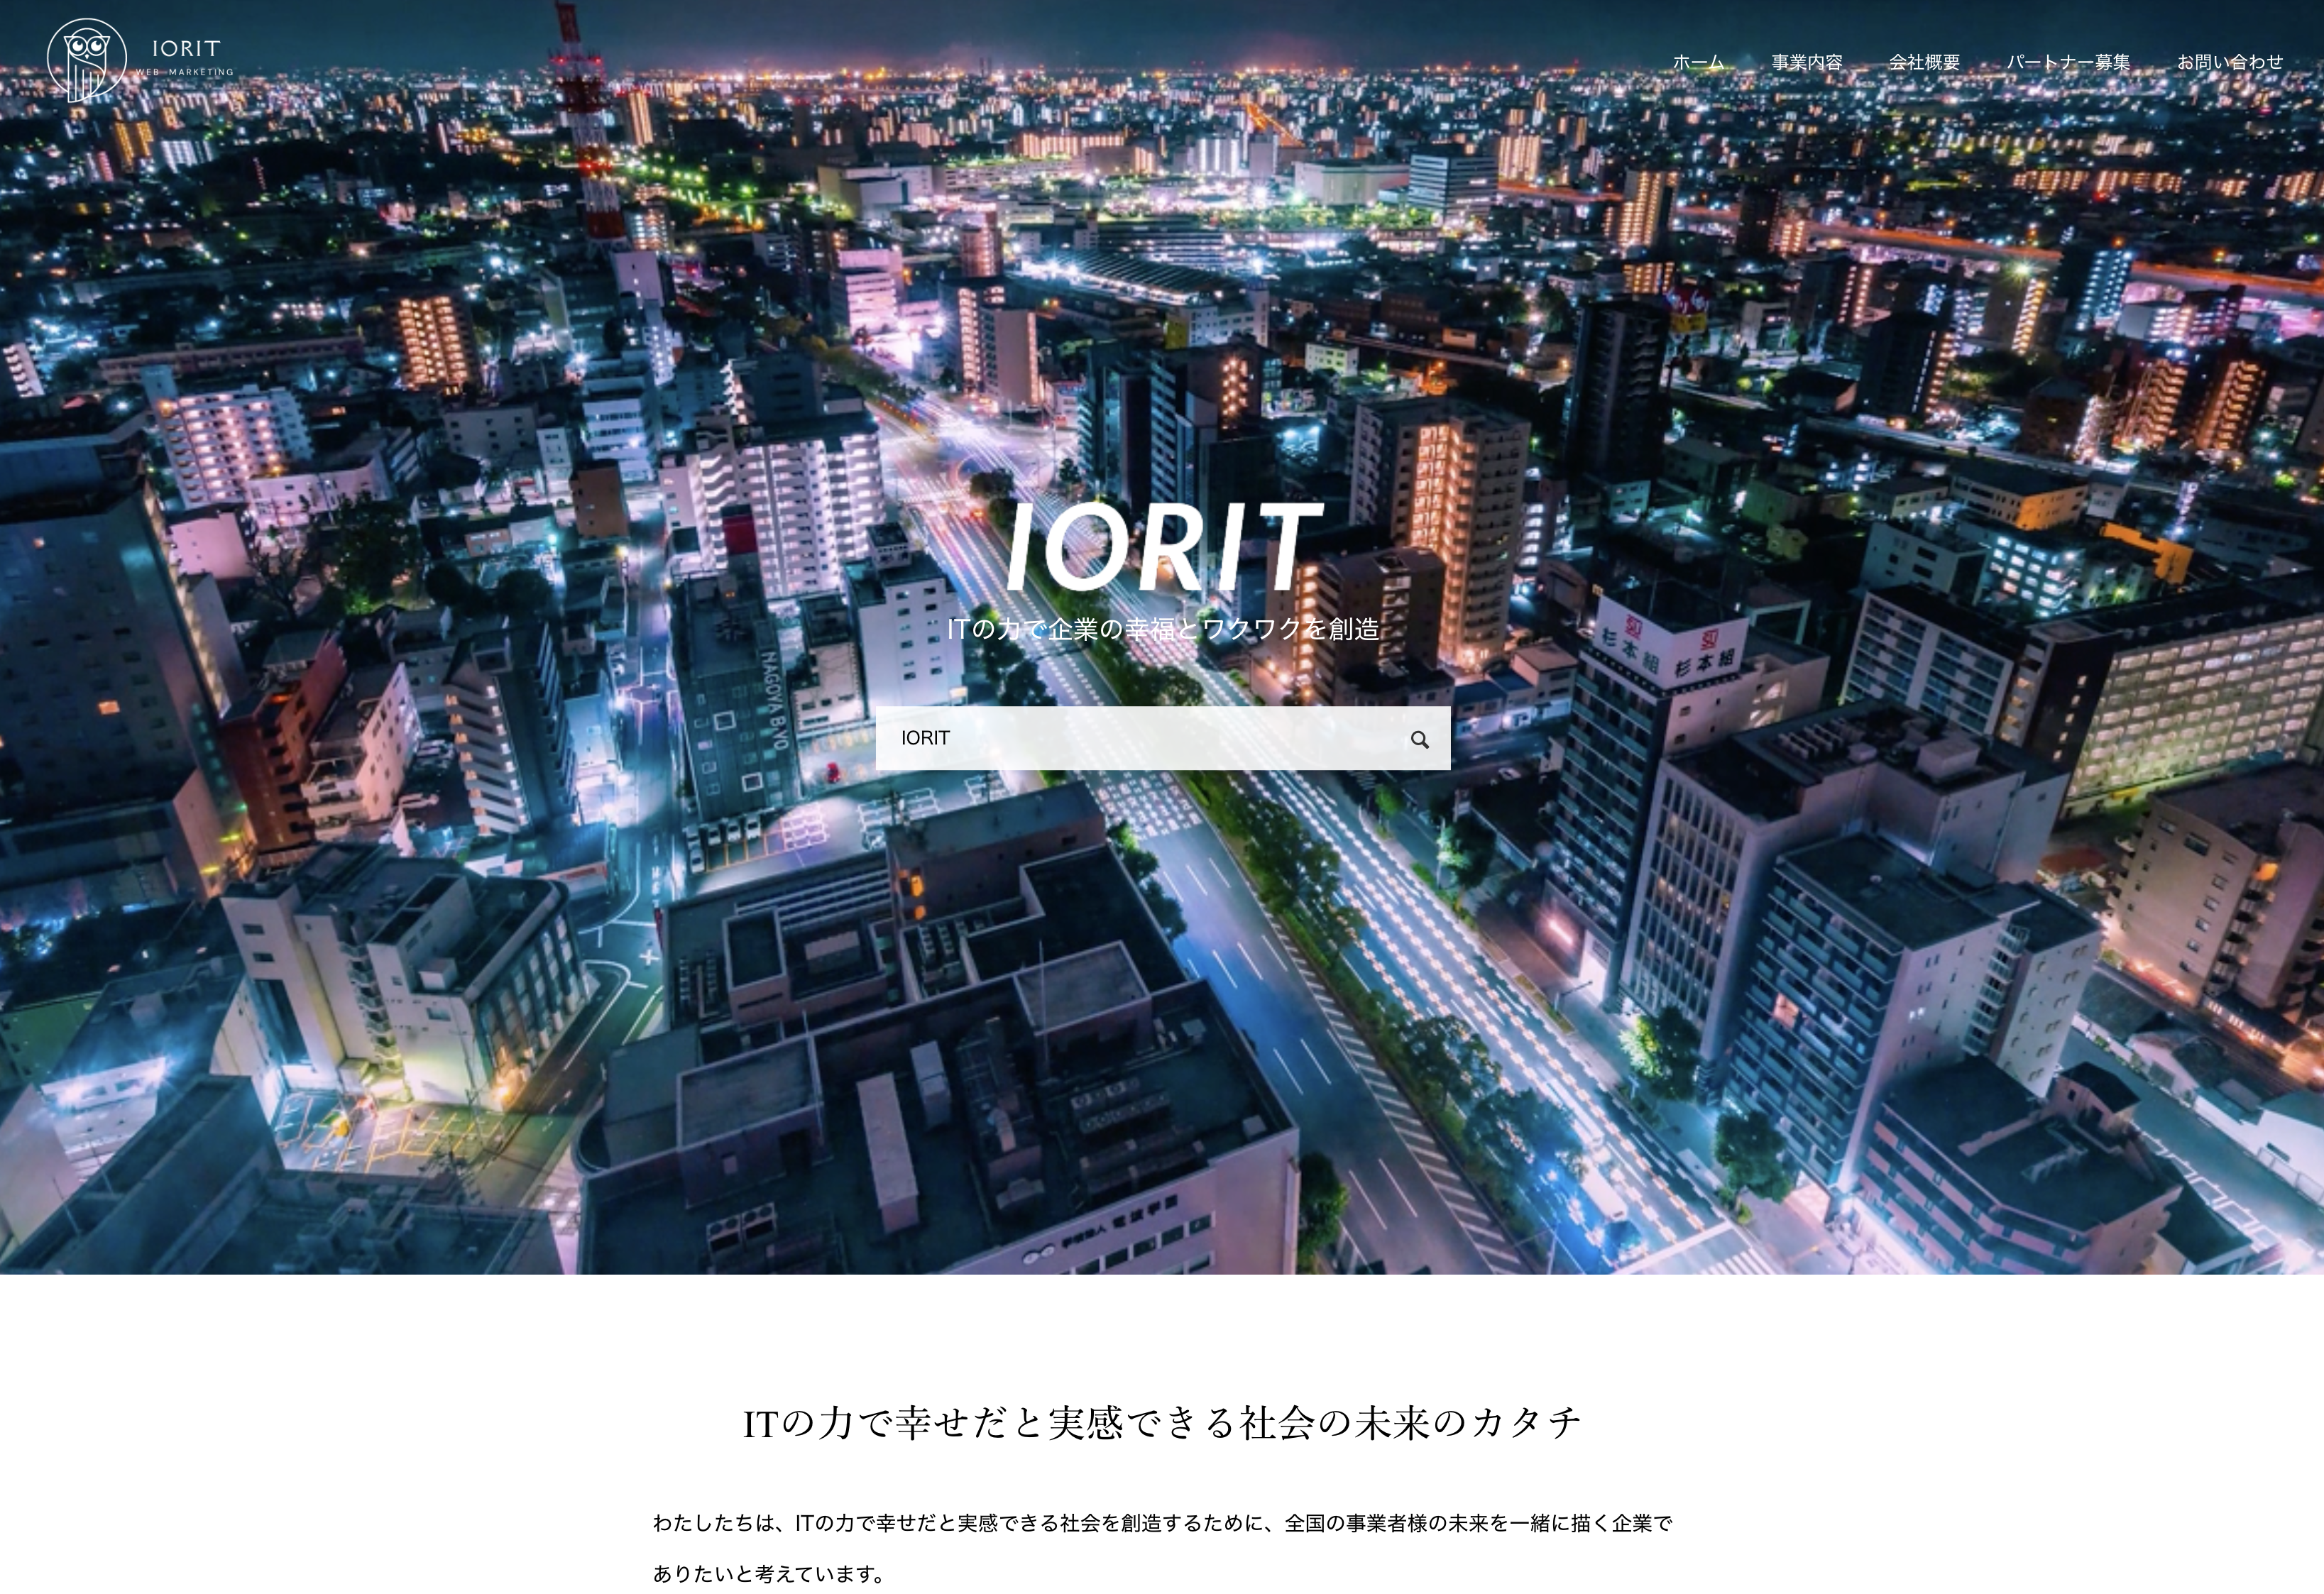 株式会社IORITの株式会社IORIT:オンライン秘書サービス